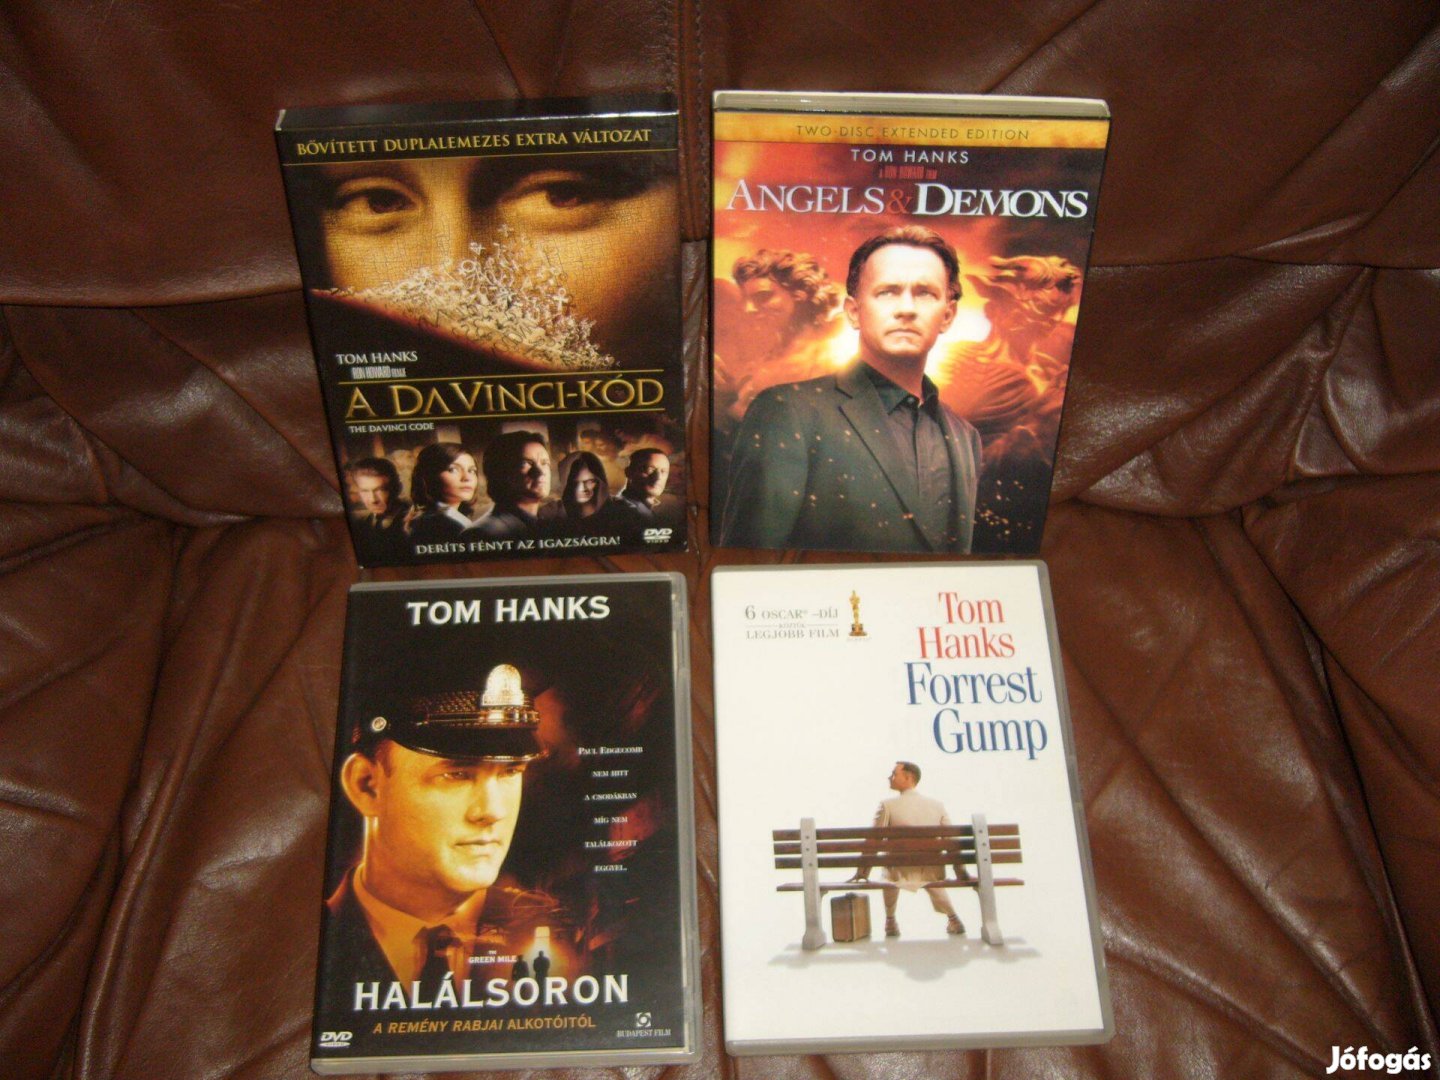 Tom Hanks dvd filmek . Cserélhetők Blu-ray filmekre